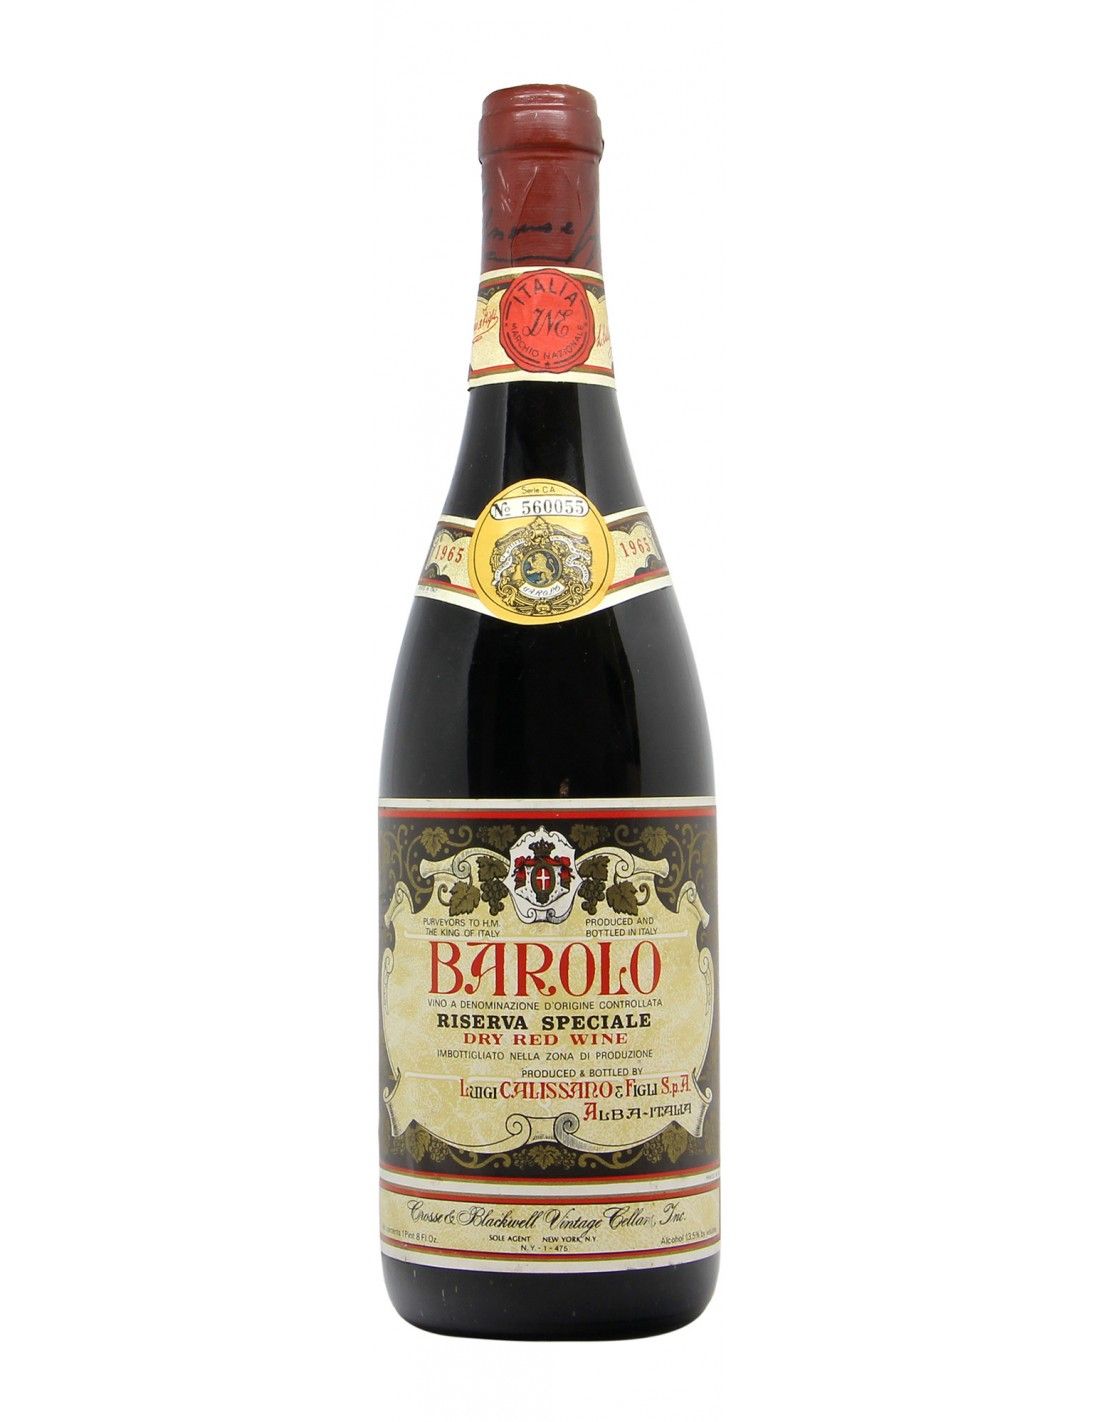 BAROLO RISERVA SPECIALE 1965 CALISSANO Grandi Bottiglie